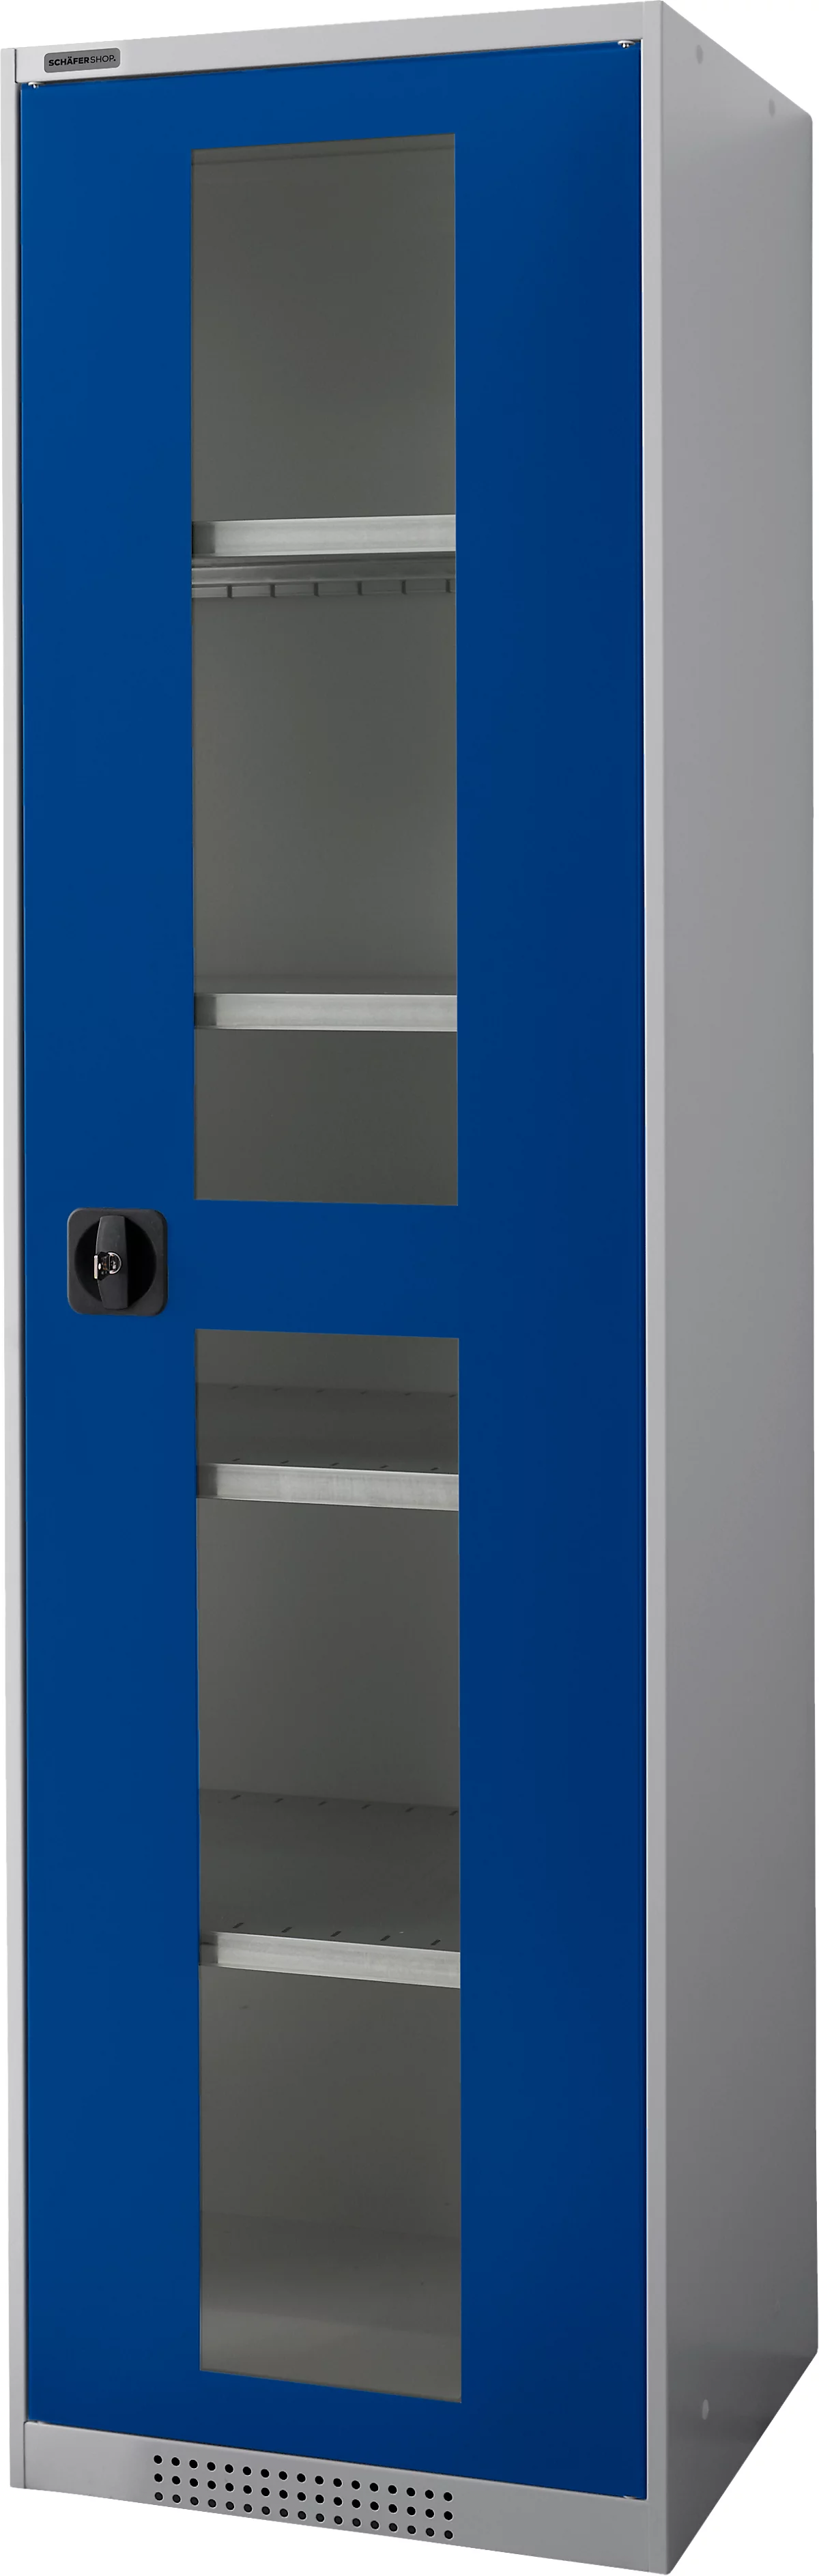 Schäfer Shop Genius armario de dos puertas FS, acero, mirilla, agujeros de ventilación, AN 545 x F 520 x AL 1950 mm, 5 OH, aluminio blanco/azul genciana, hasta 250 kg 